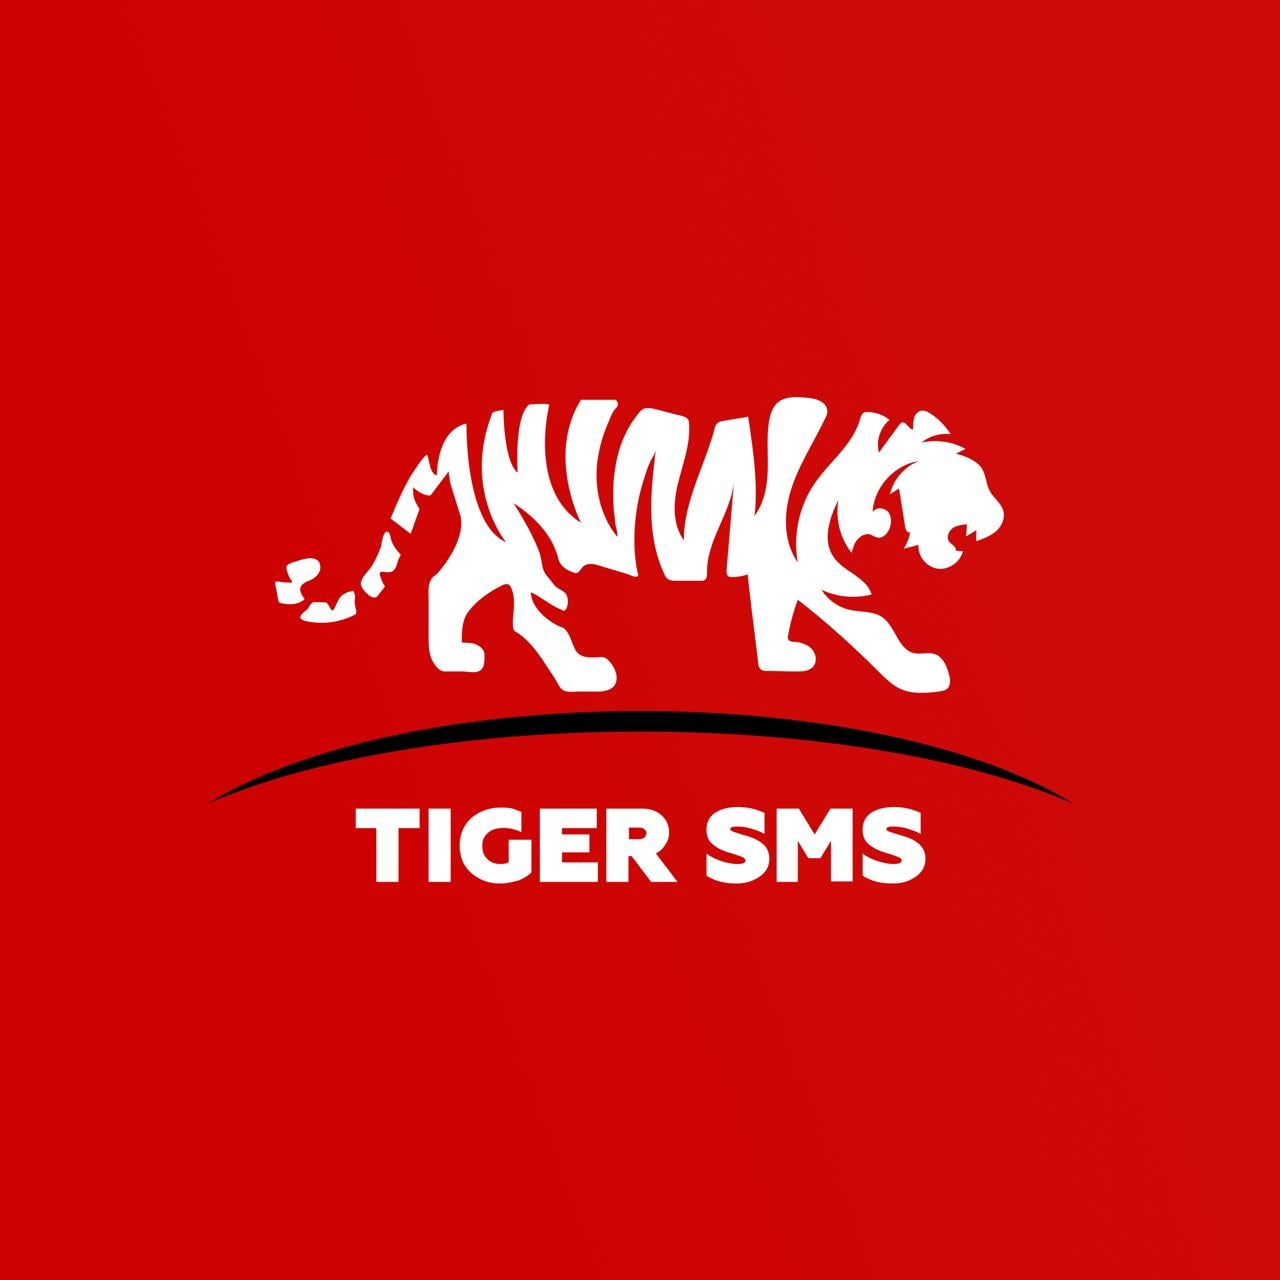 Tiger SMS